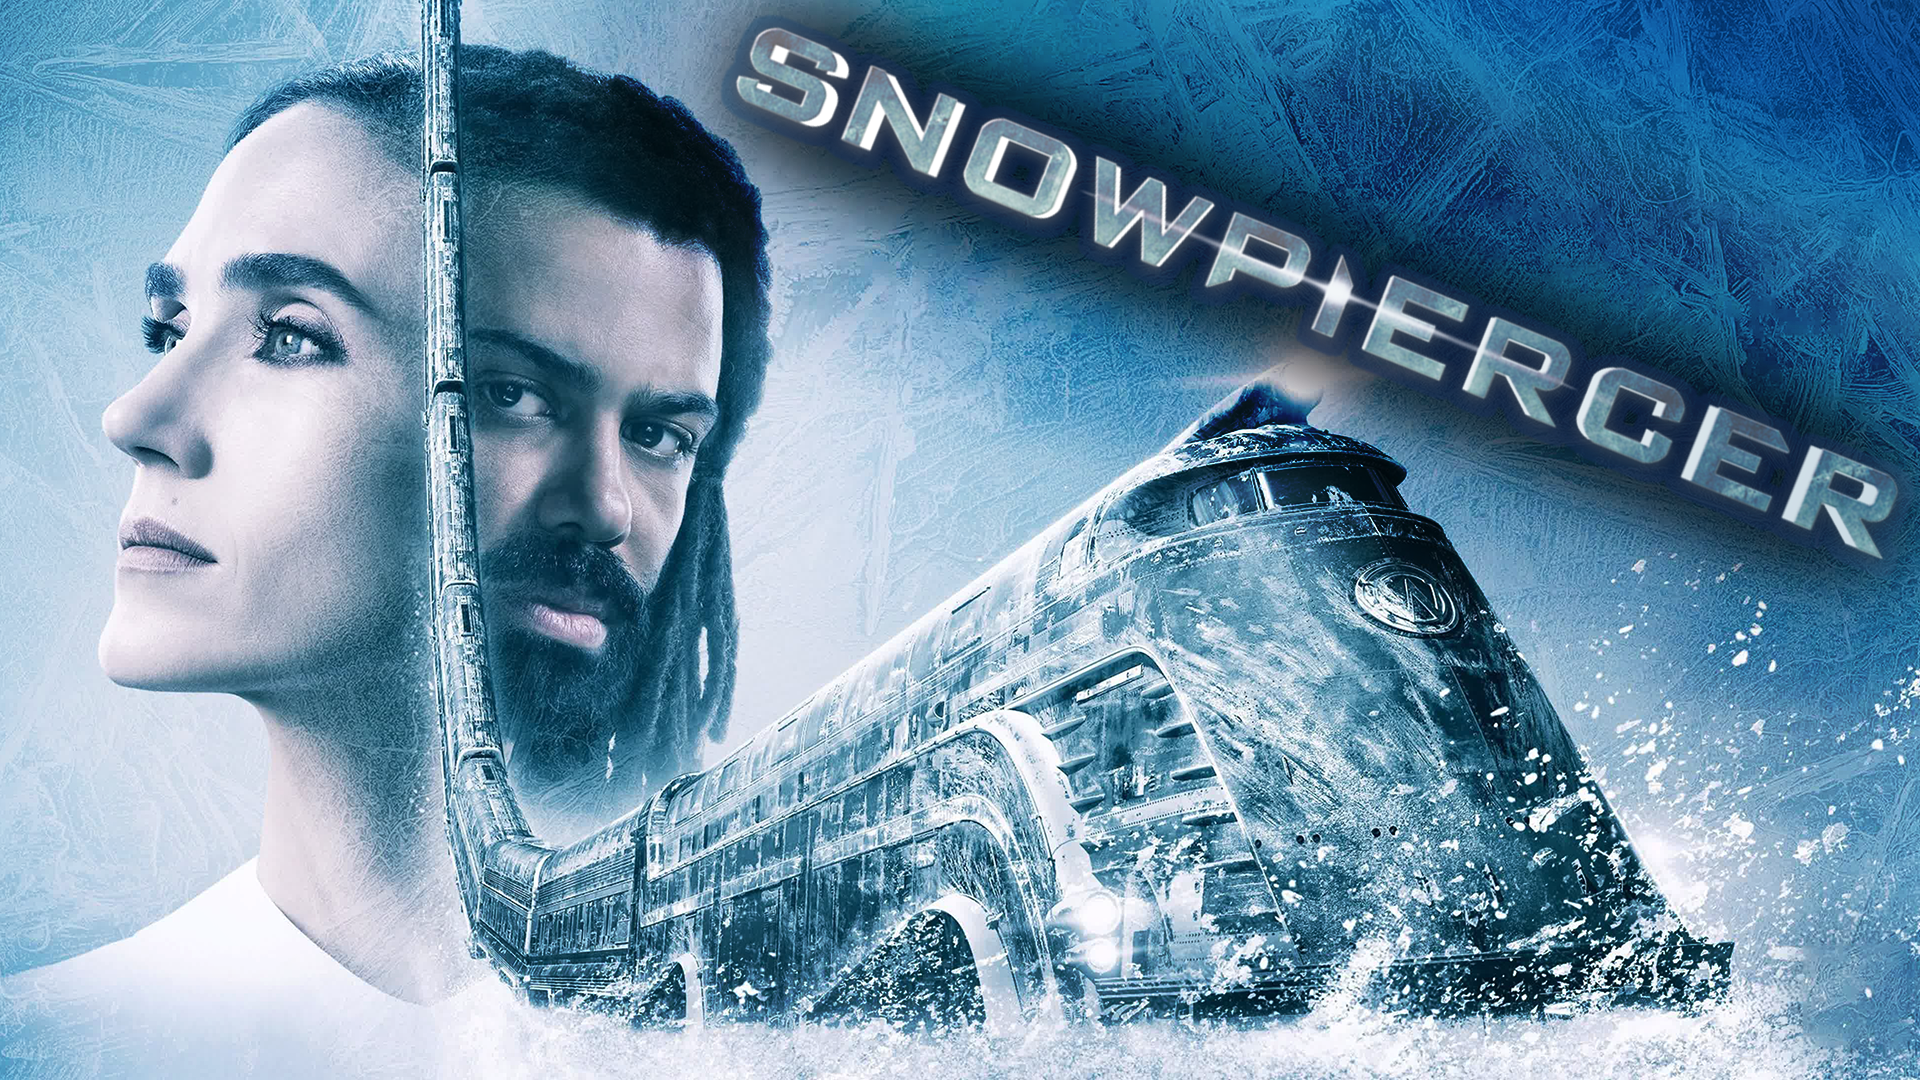 Сквозь снег – 2 сезон 5 серия / Snowpiercer